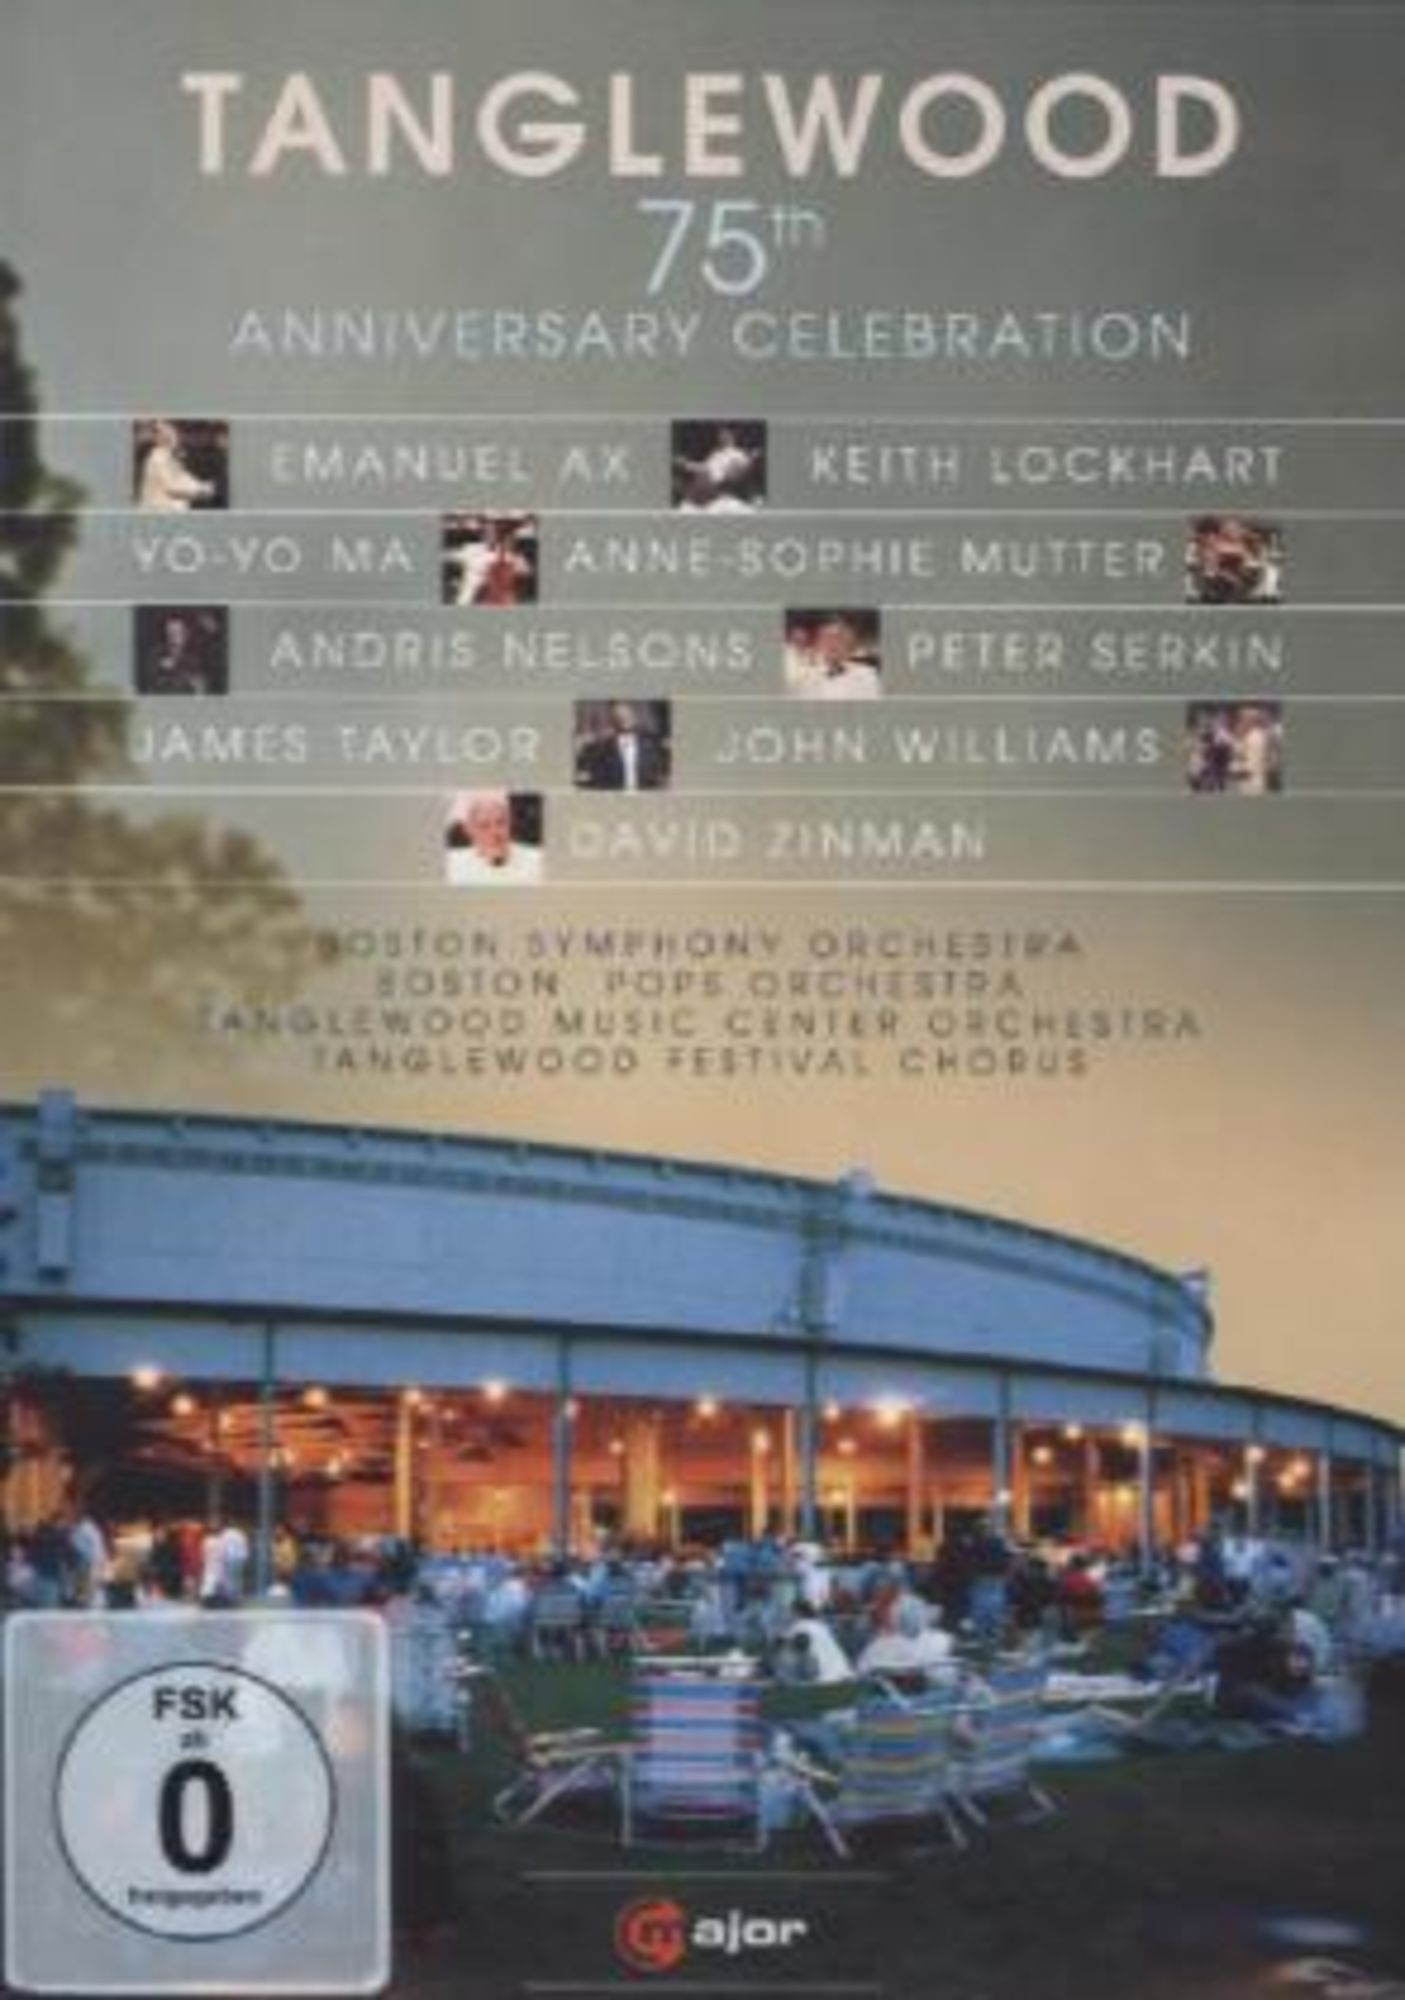 Tanglewood-75th Anniversary Celebration' von 'Various' auf 'DVD' - Musik